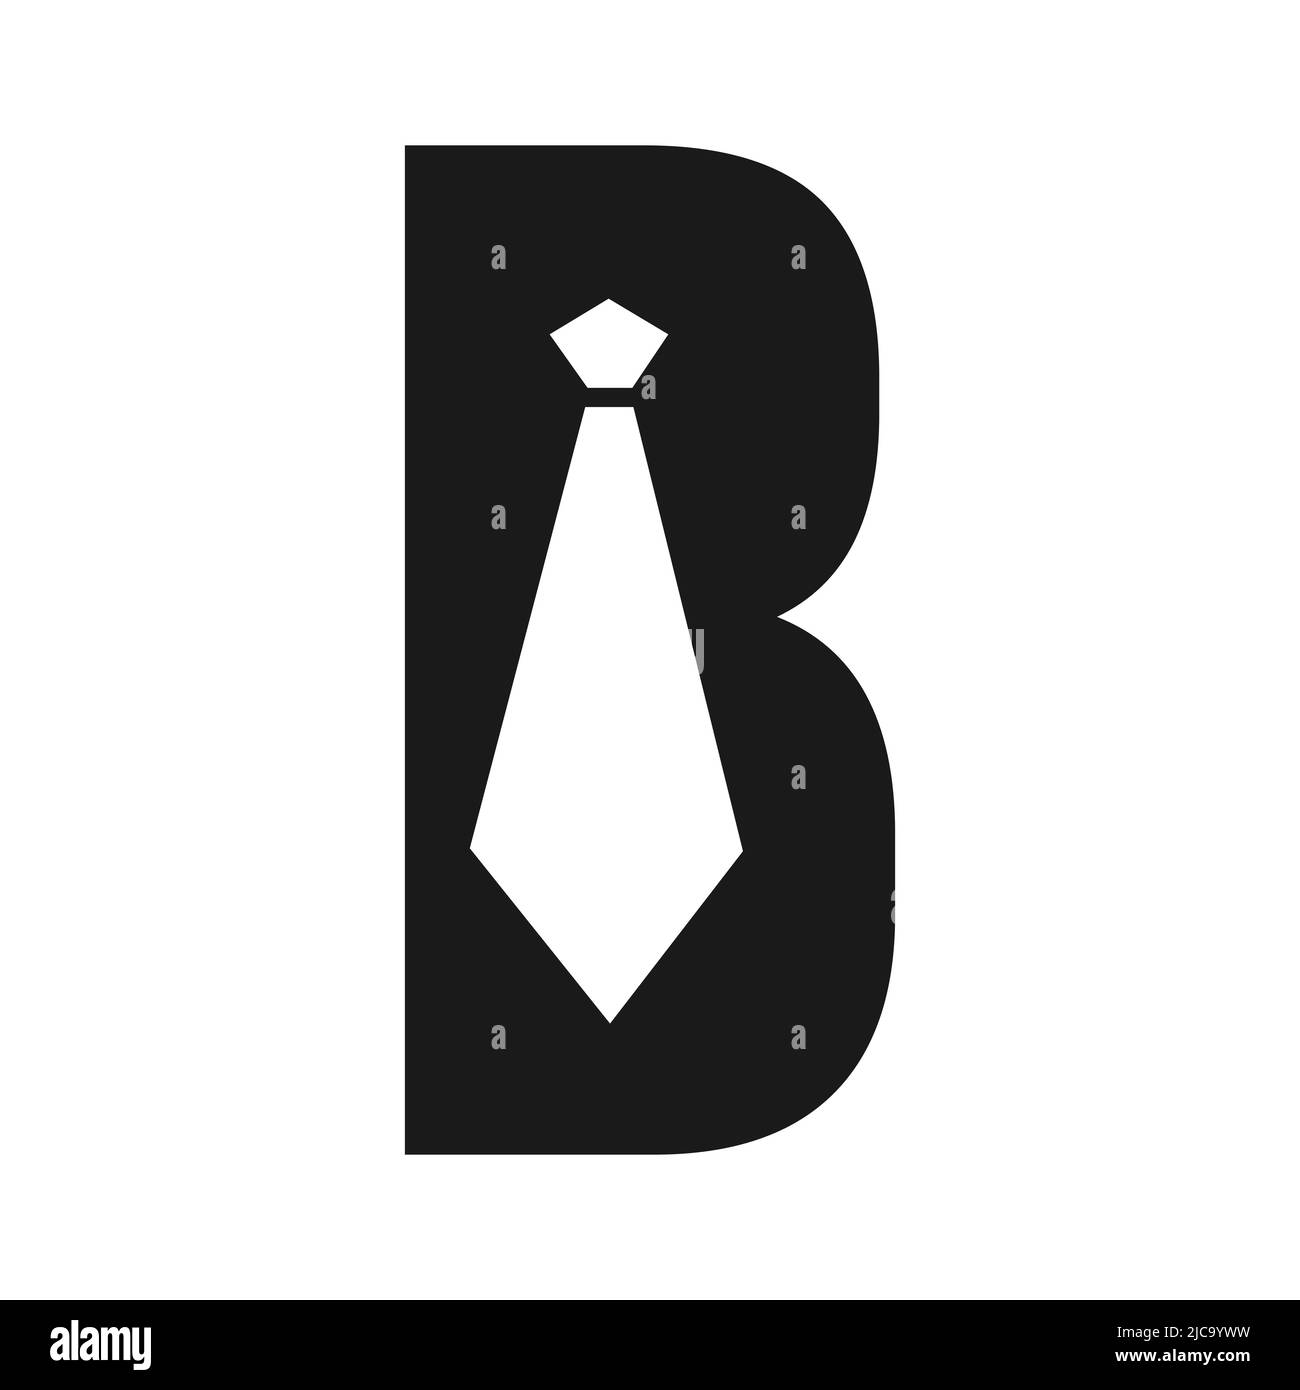 B Krawatte Buchstabe Vektor Logo Design. Vorlage für Business-Logo im B-Anzug-Design Stock Vektor